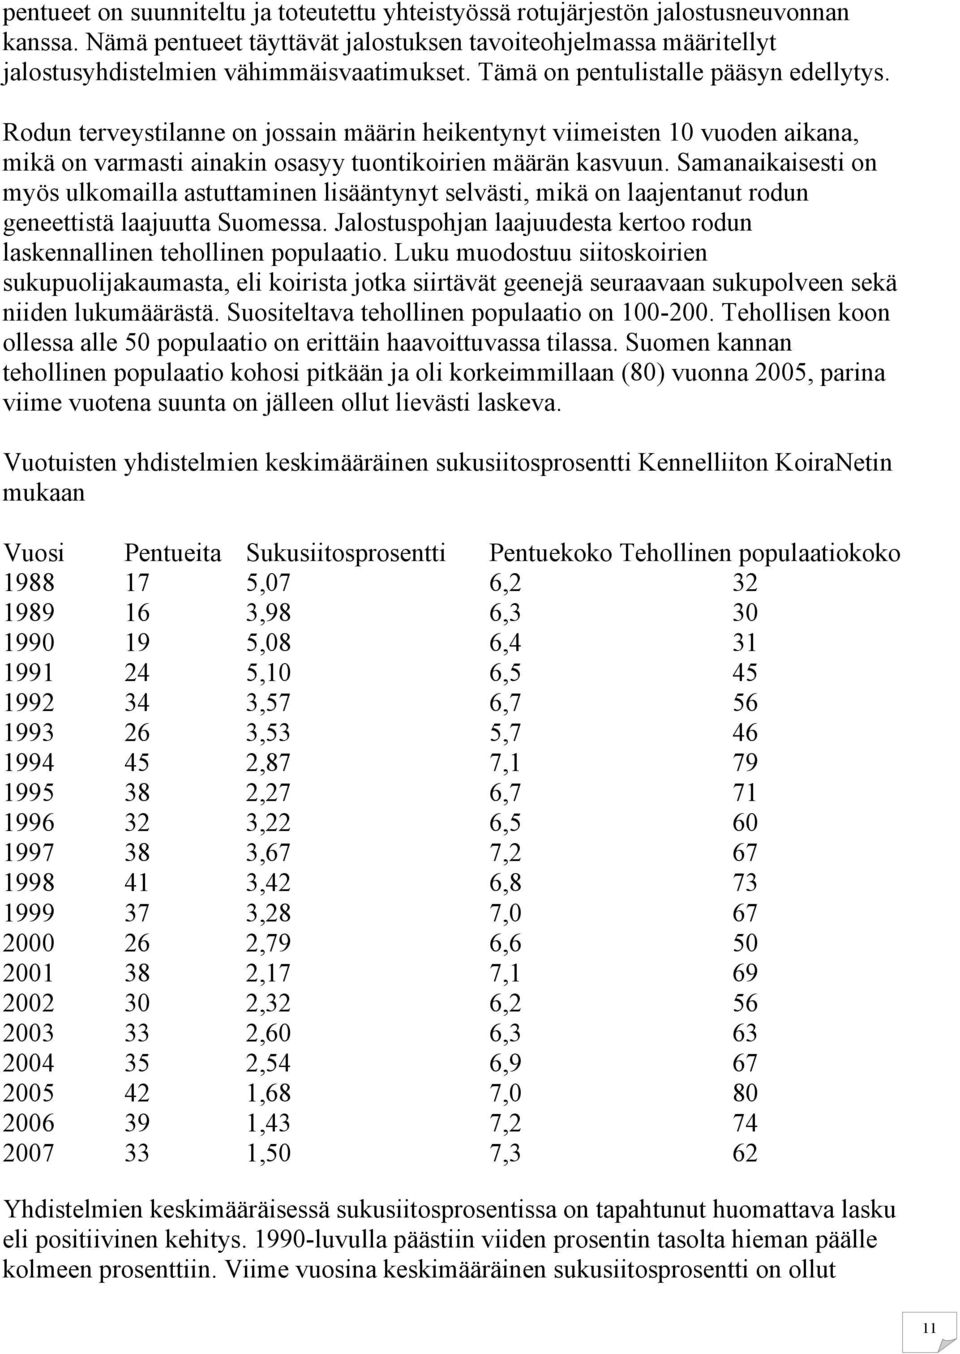 Samanaikaisesti on myös ulkomailla astuttaminen lisääntynyt selvästi, mikä on laajentanut rodun geneettistä laajuutta Suomessa.